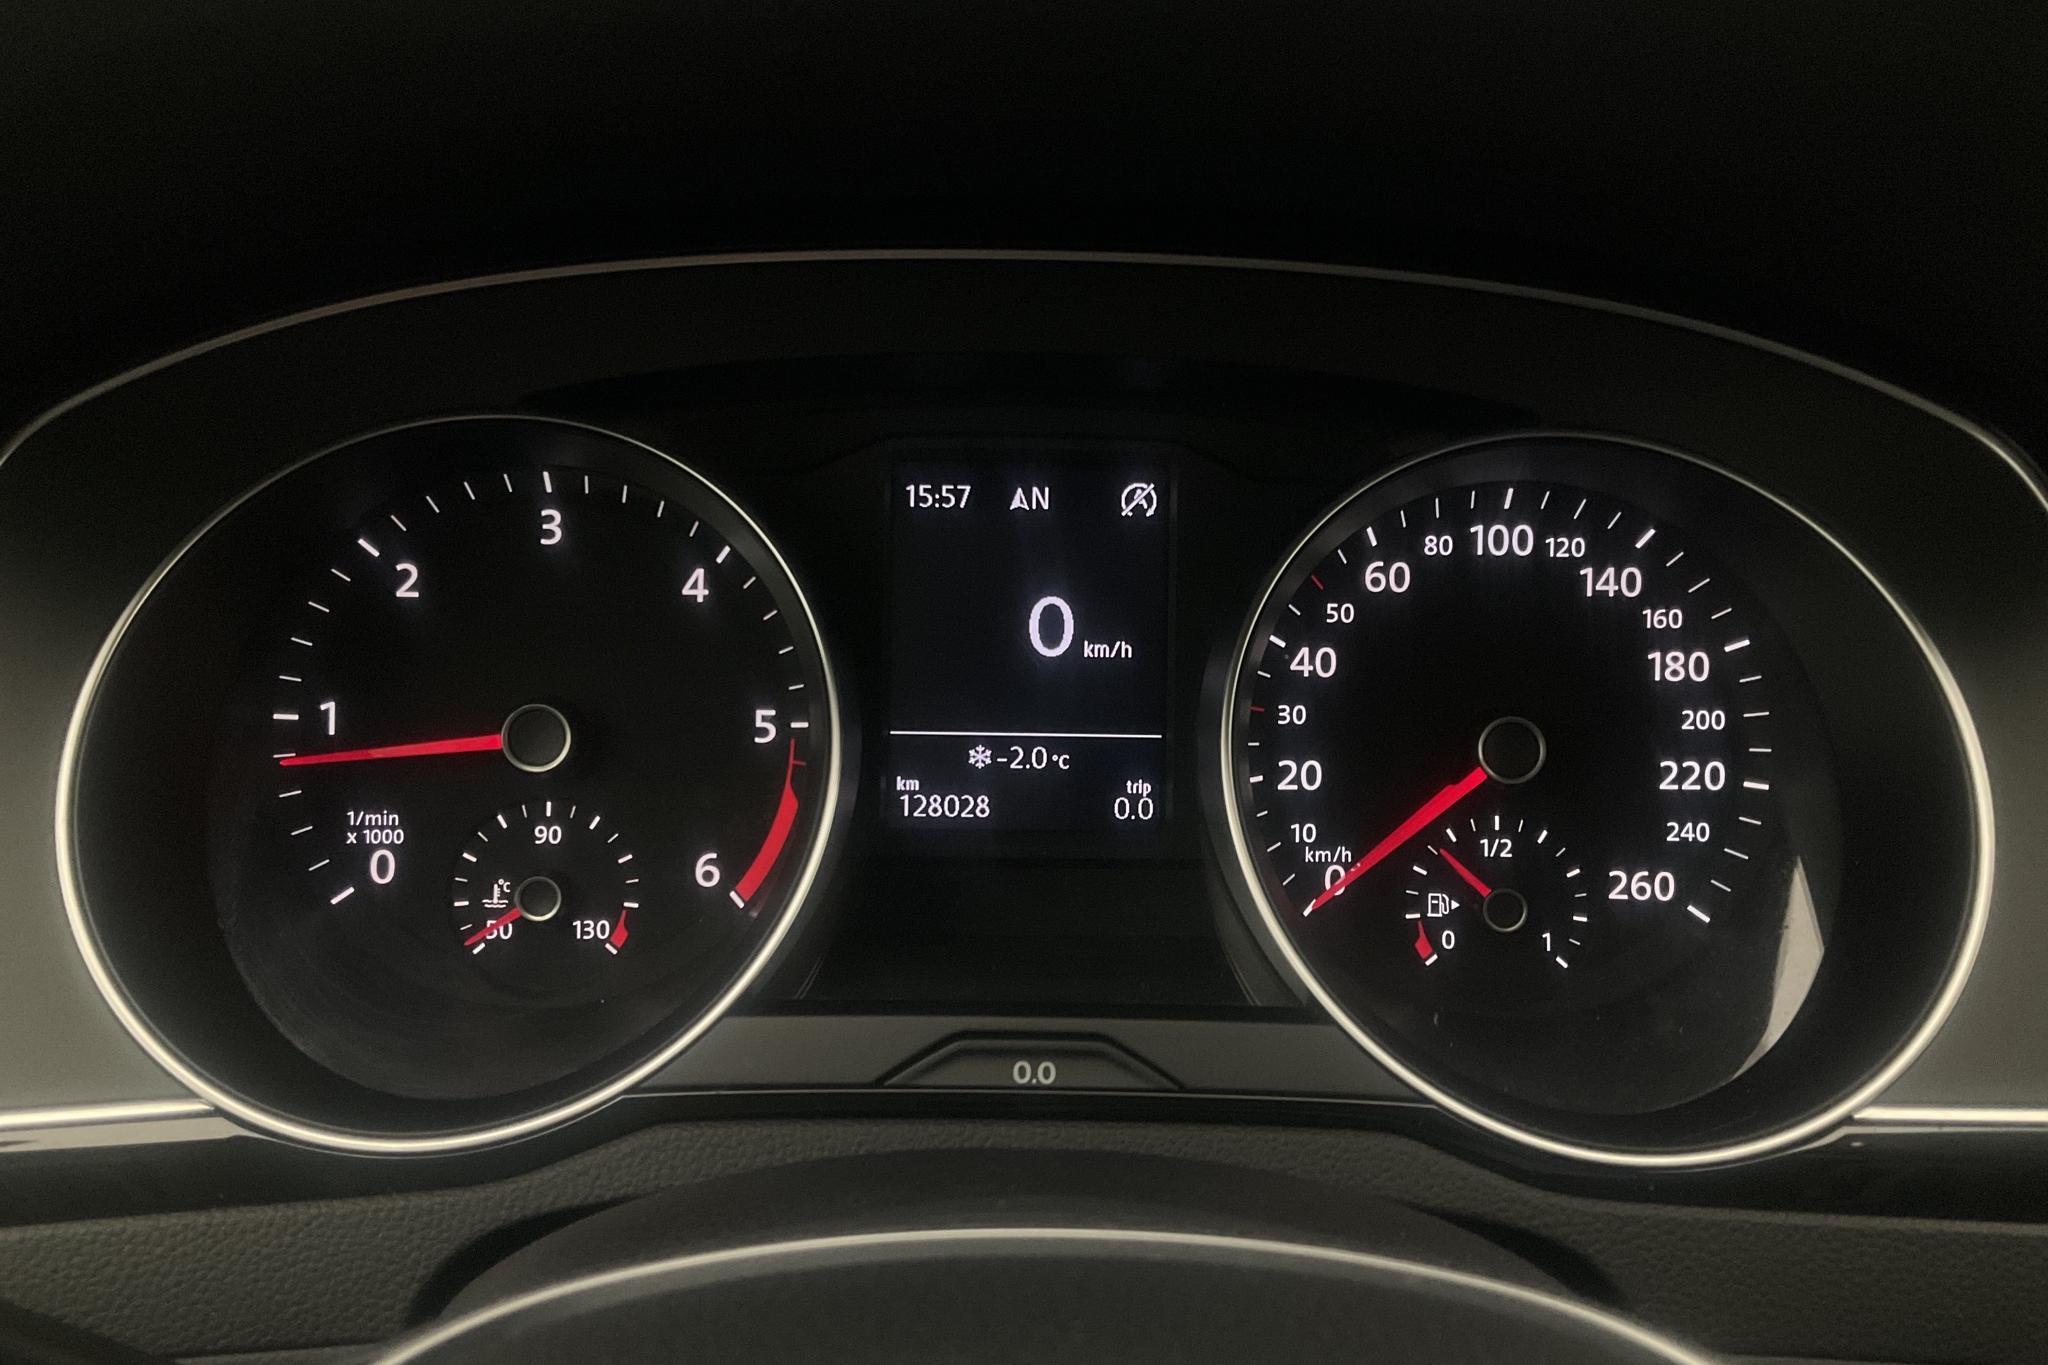 VW Passat 2.0 TDI Sportscombi (150hk) - 128 030 km - Manual - white - 2018